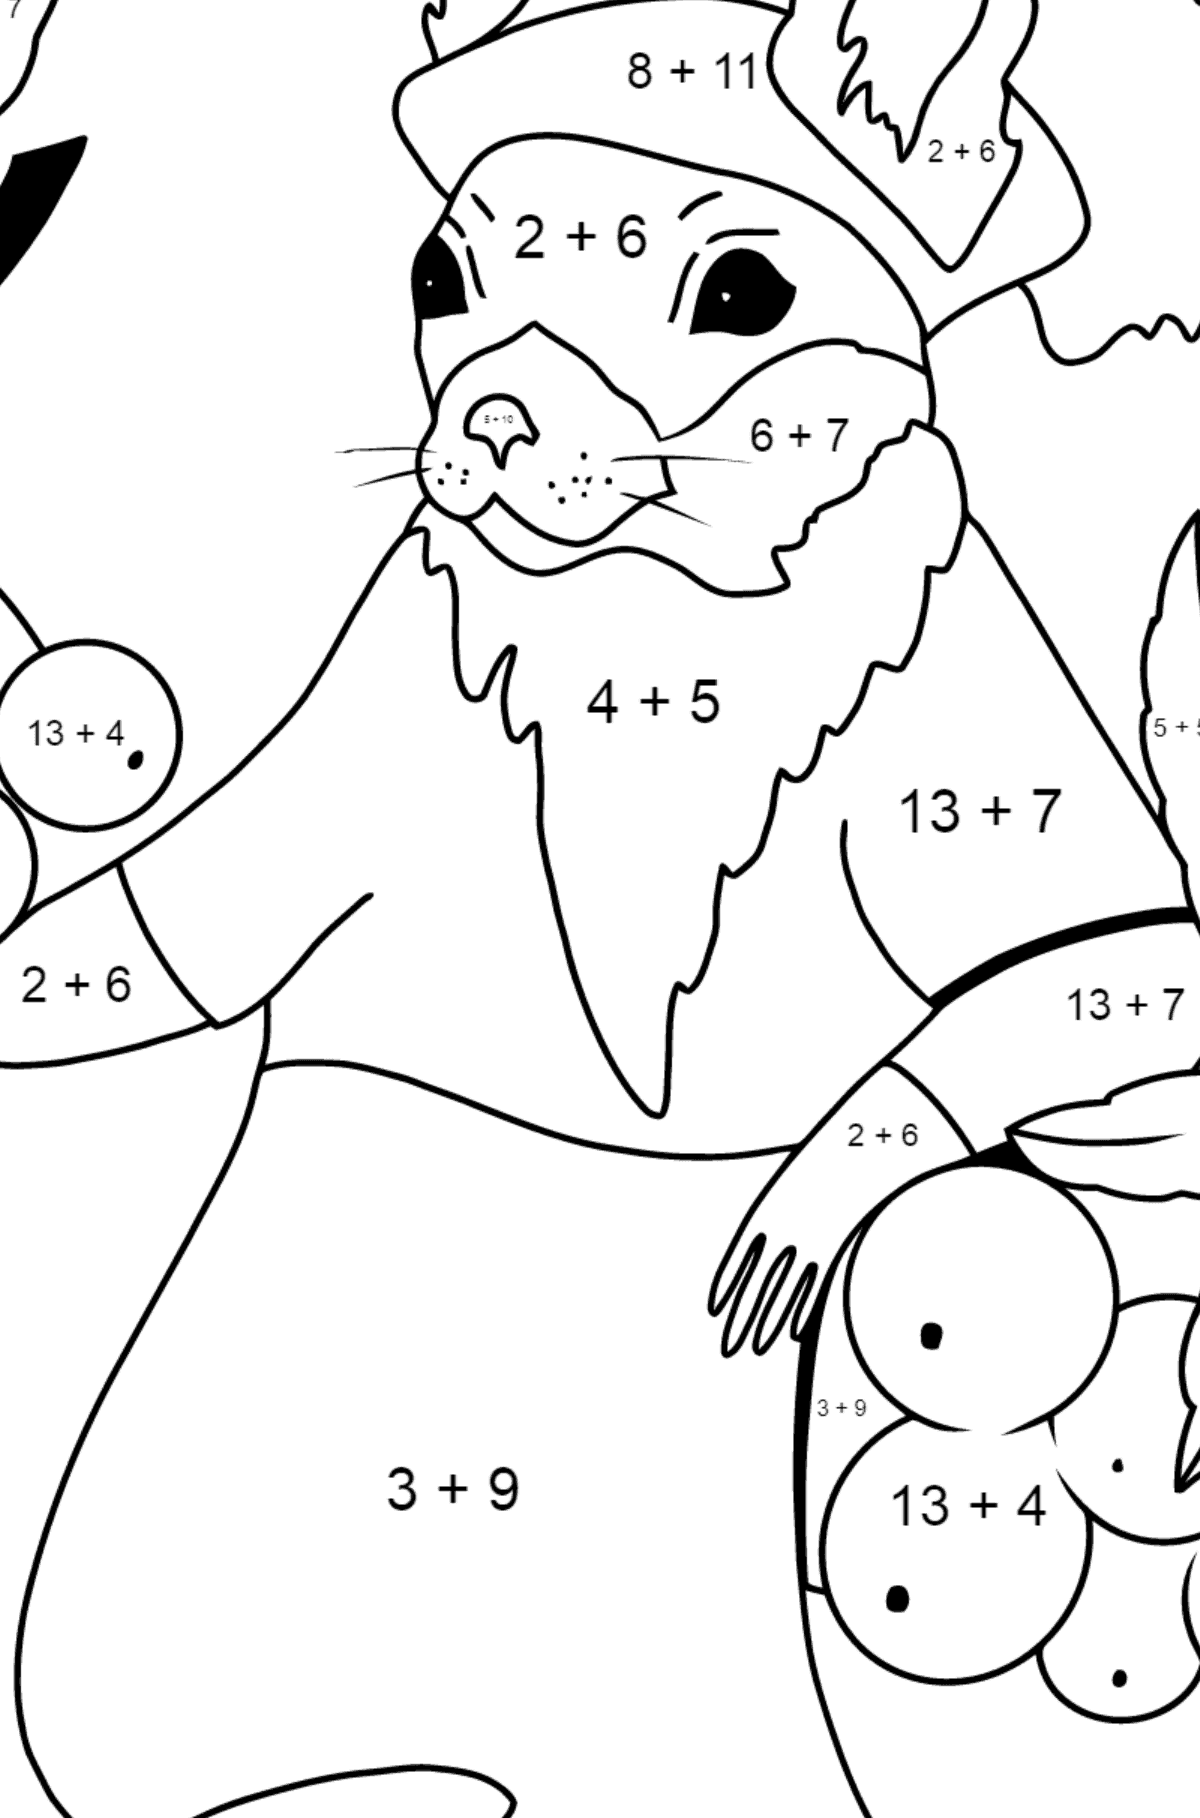 Jesienna kolorystyka - wiewiórka - Kolorowanki matematyczne dodawanie dla dzieci